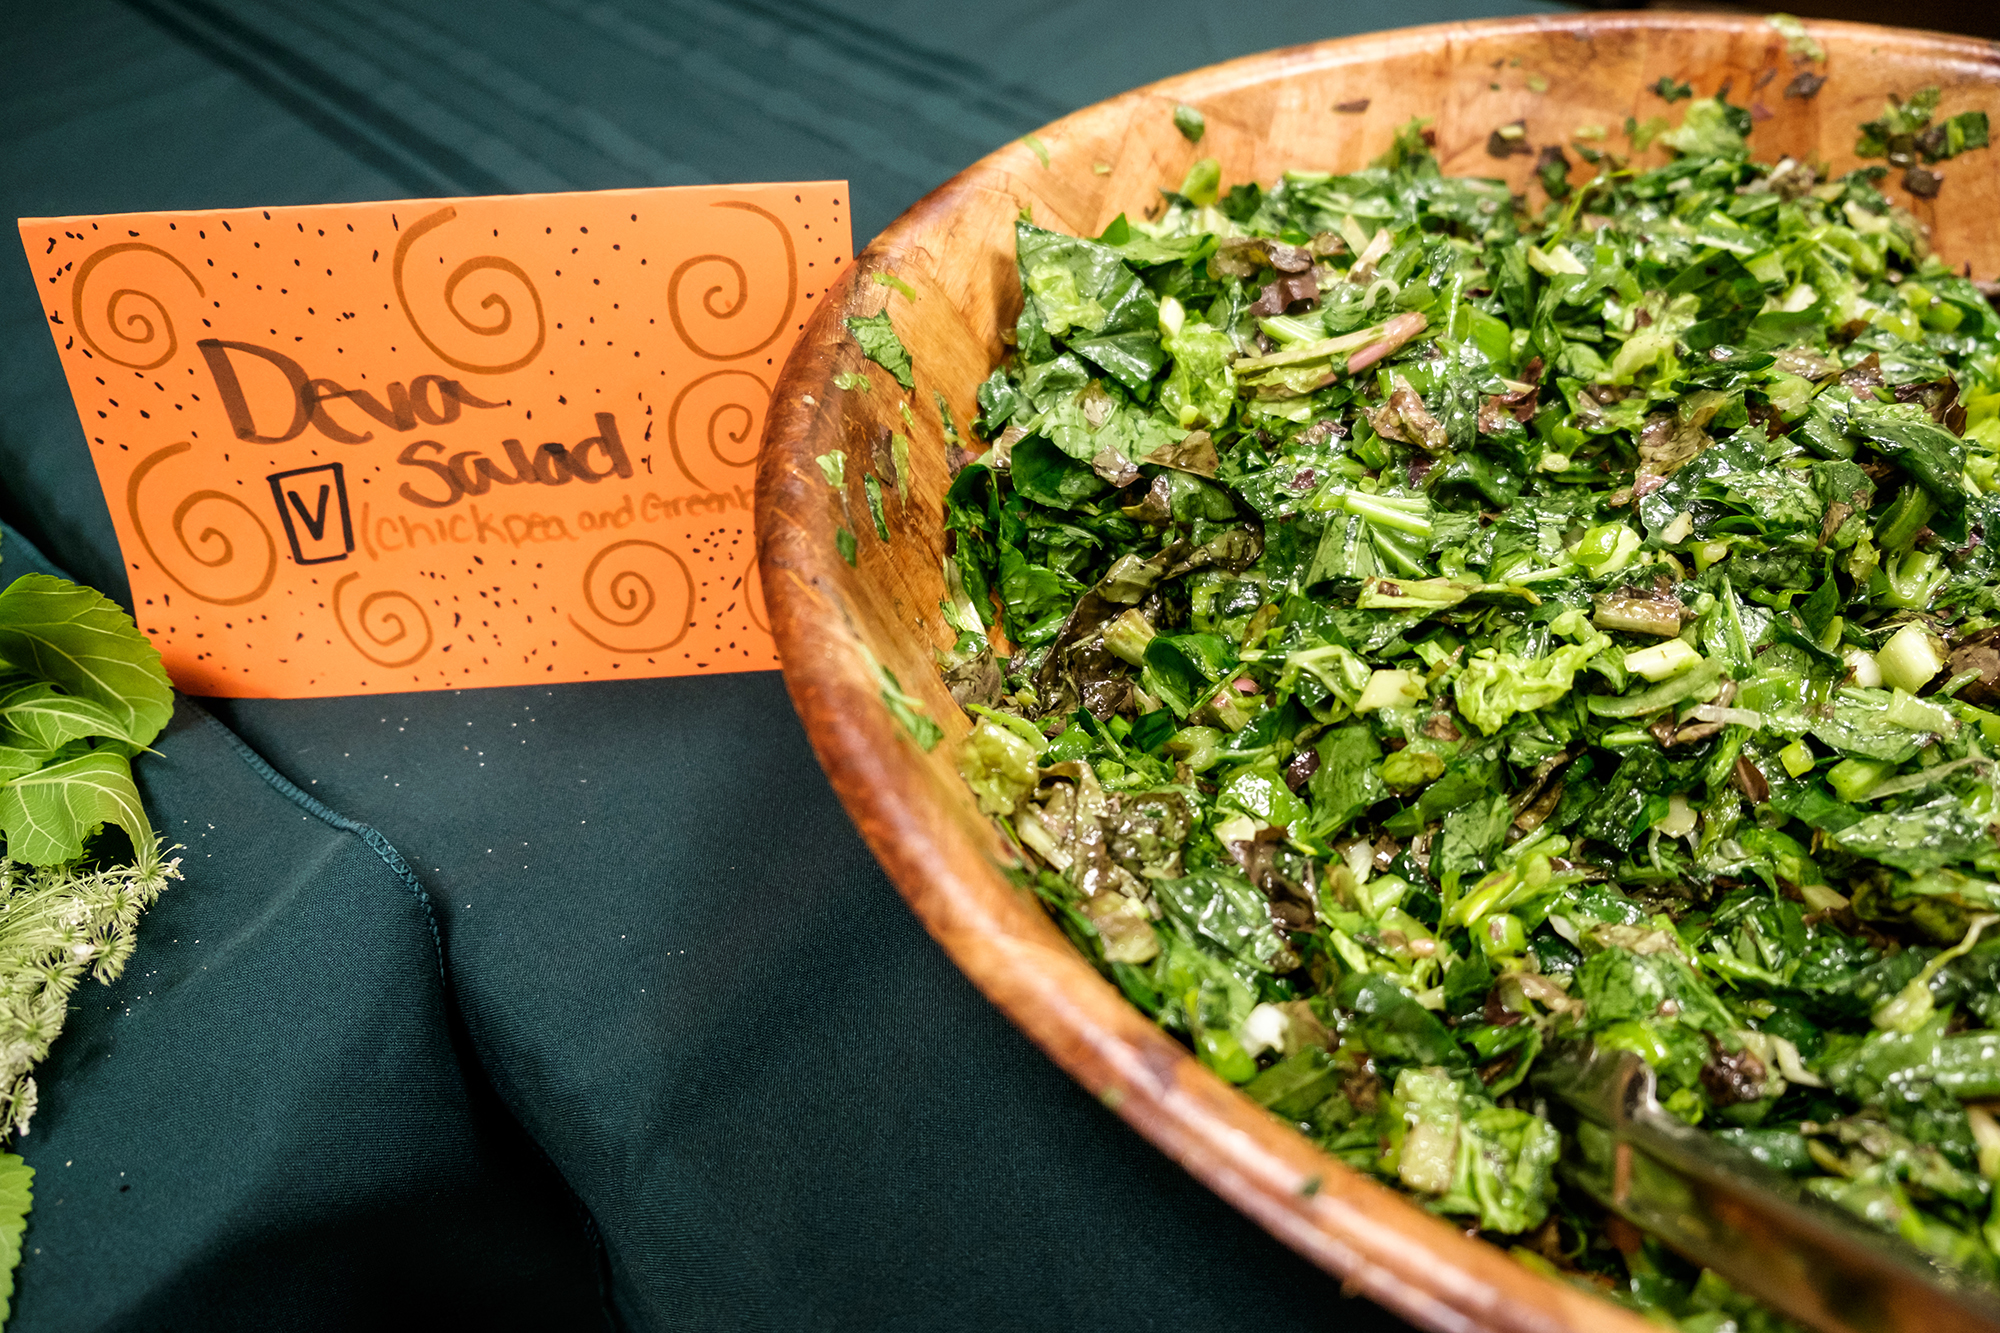 green deva salad in a wooden salad bowl